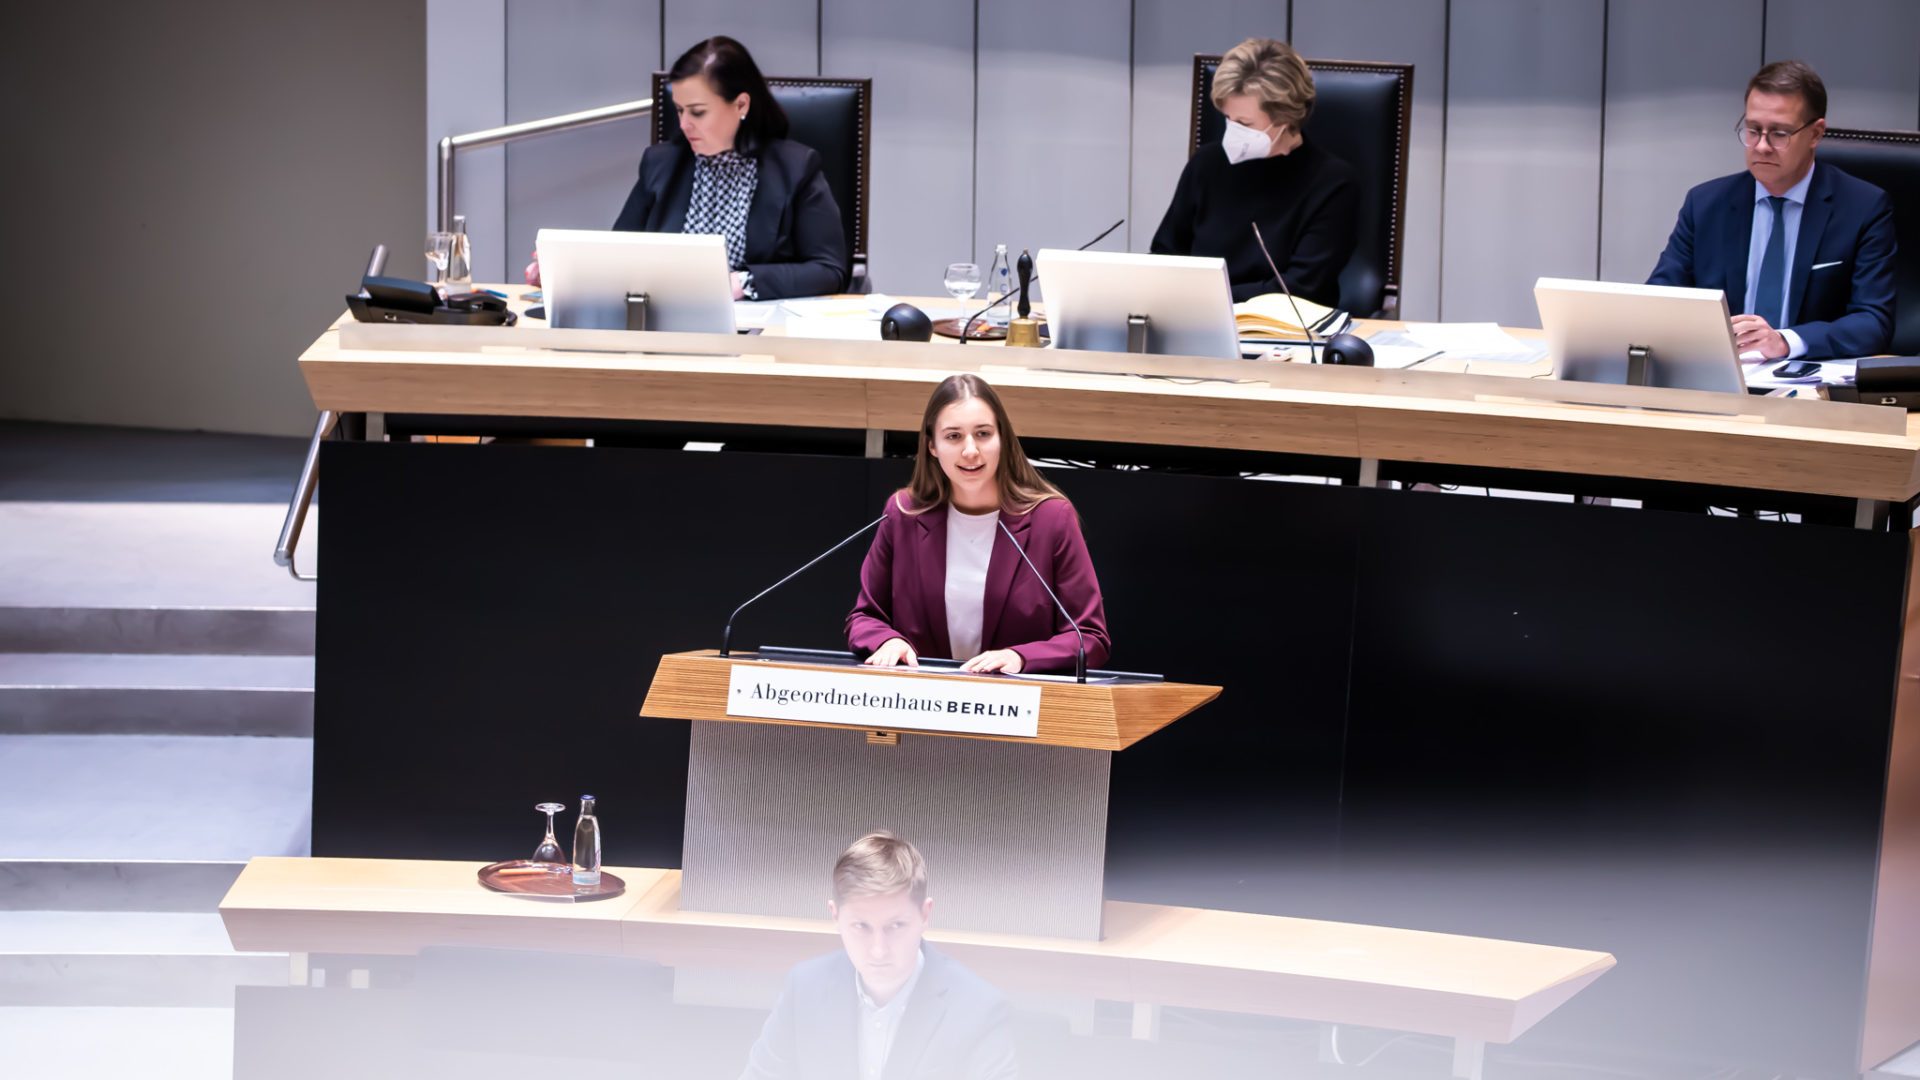 Klara Schedlich am Redepult des Abgeordnetenhauses. Sie hält eine Rede und trägt einen weinroten Blazer.